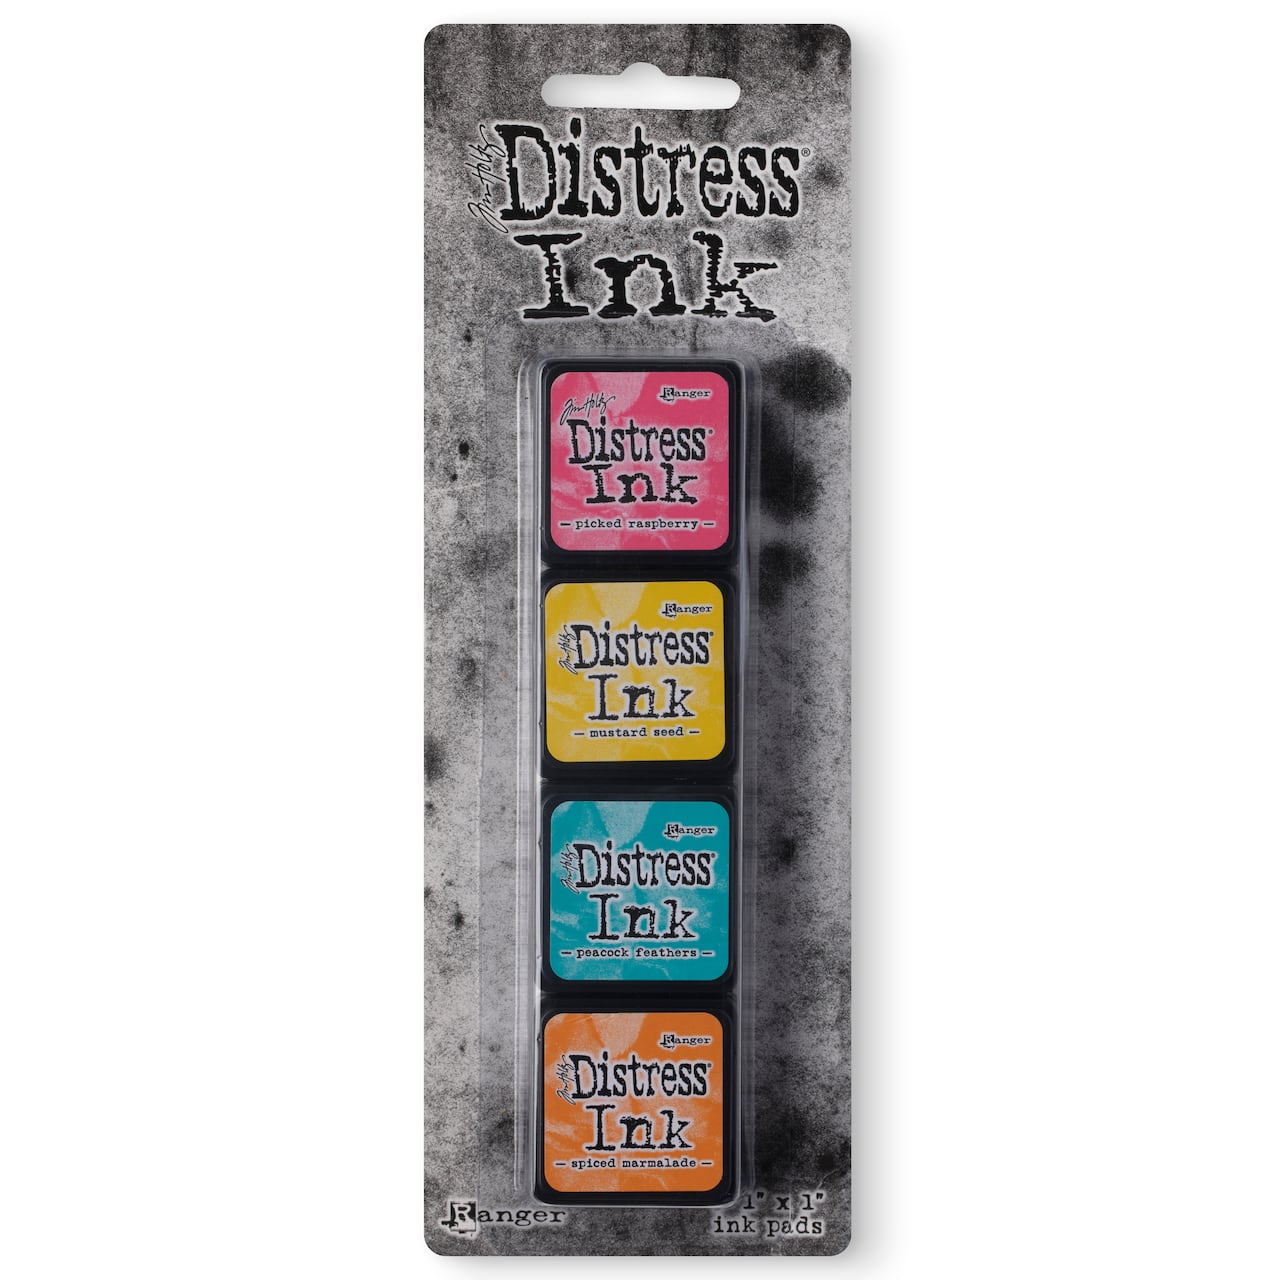 Tim Holtz&#xAE; Distress Ink Pad Mini Kit